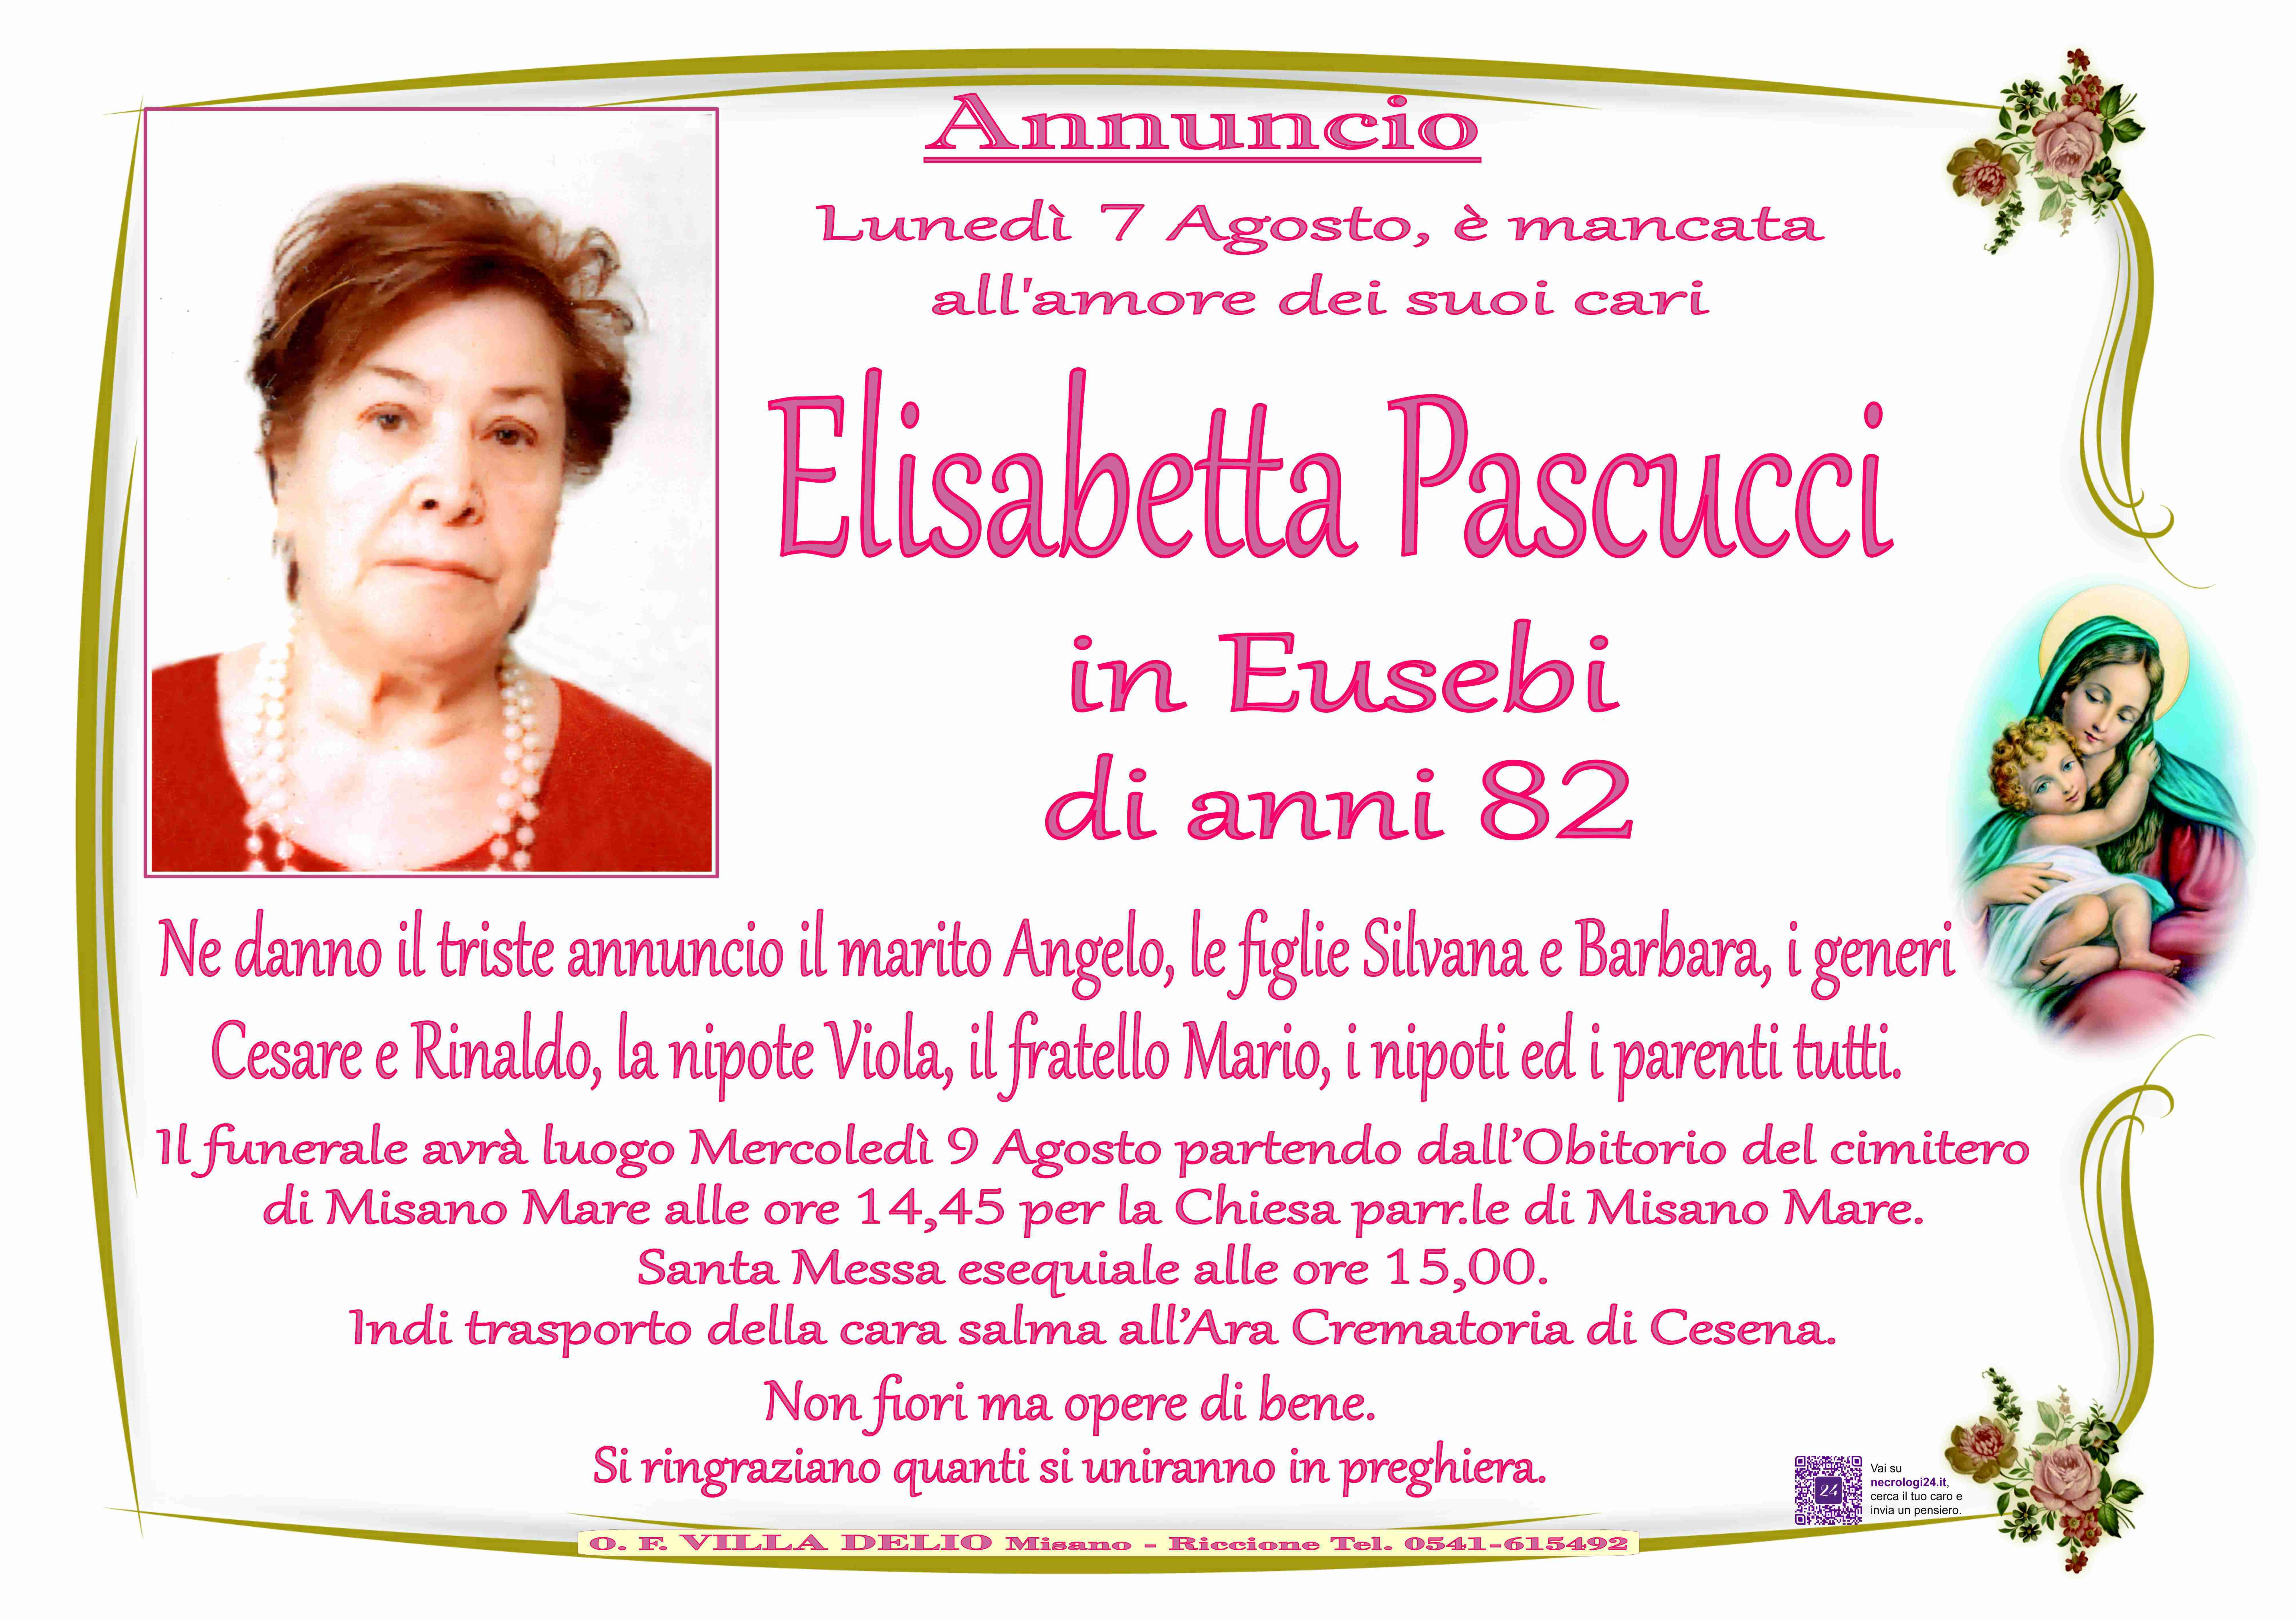 Elisabetta Pascucci